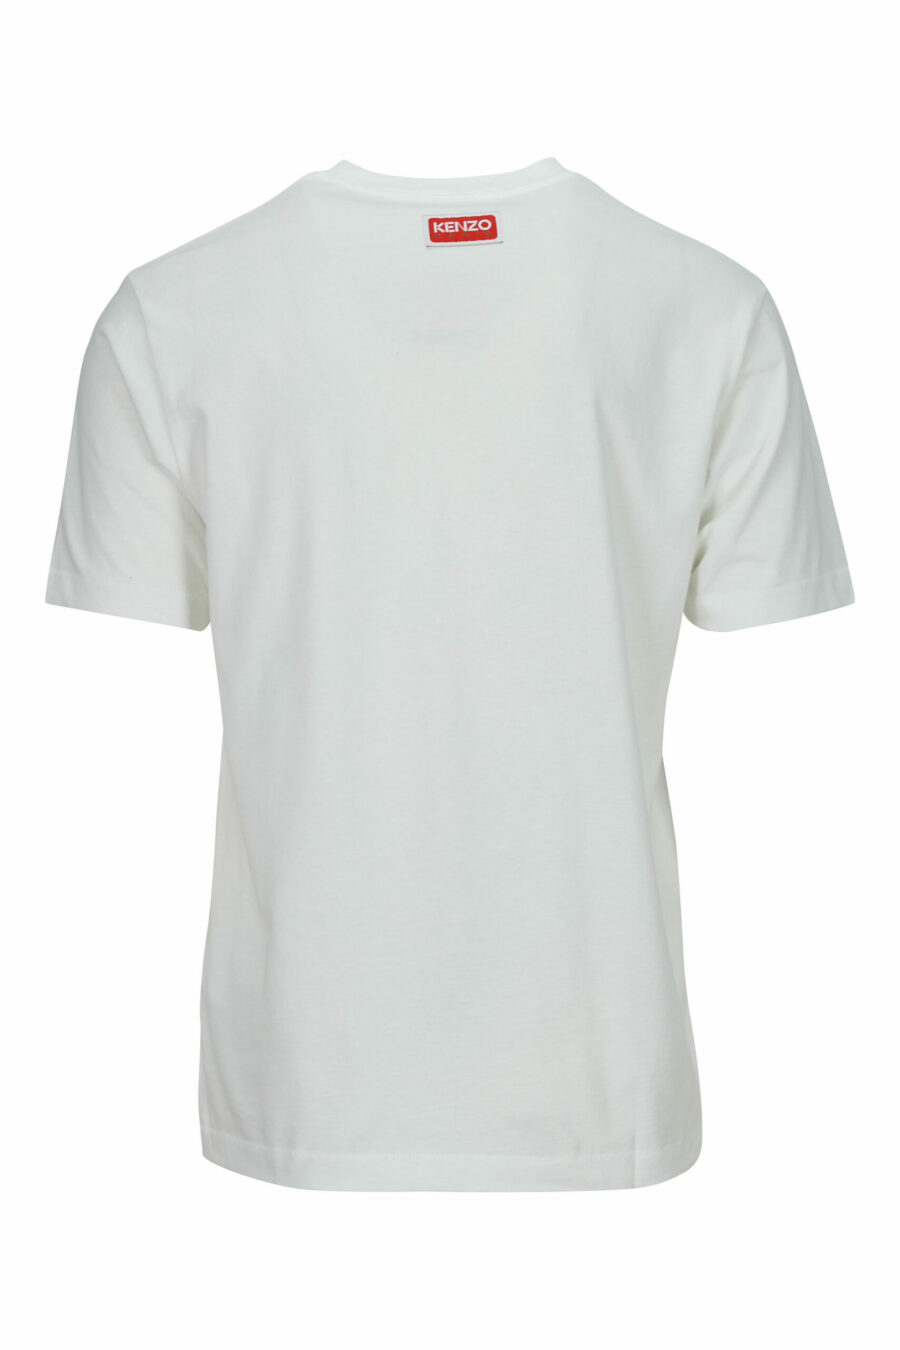 Weißes T-Shirt in Übergröße mit kleinem, geprägtem Tiger-Logo - 3612230571716 1 skaliert